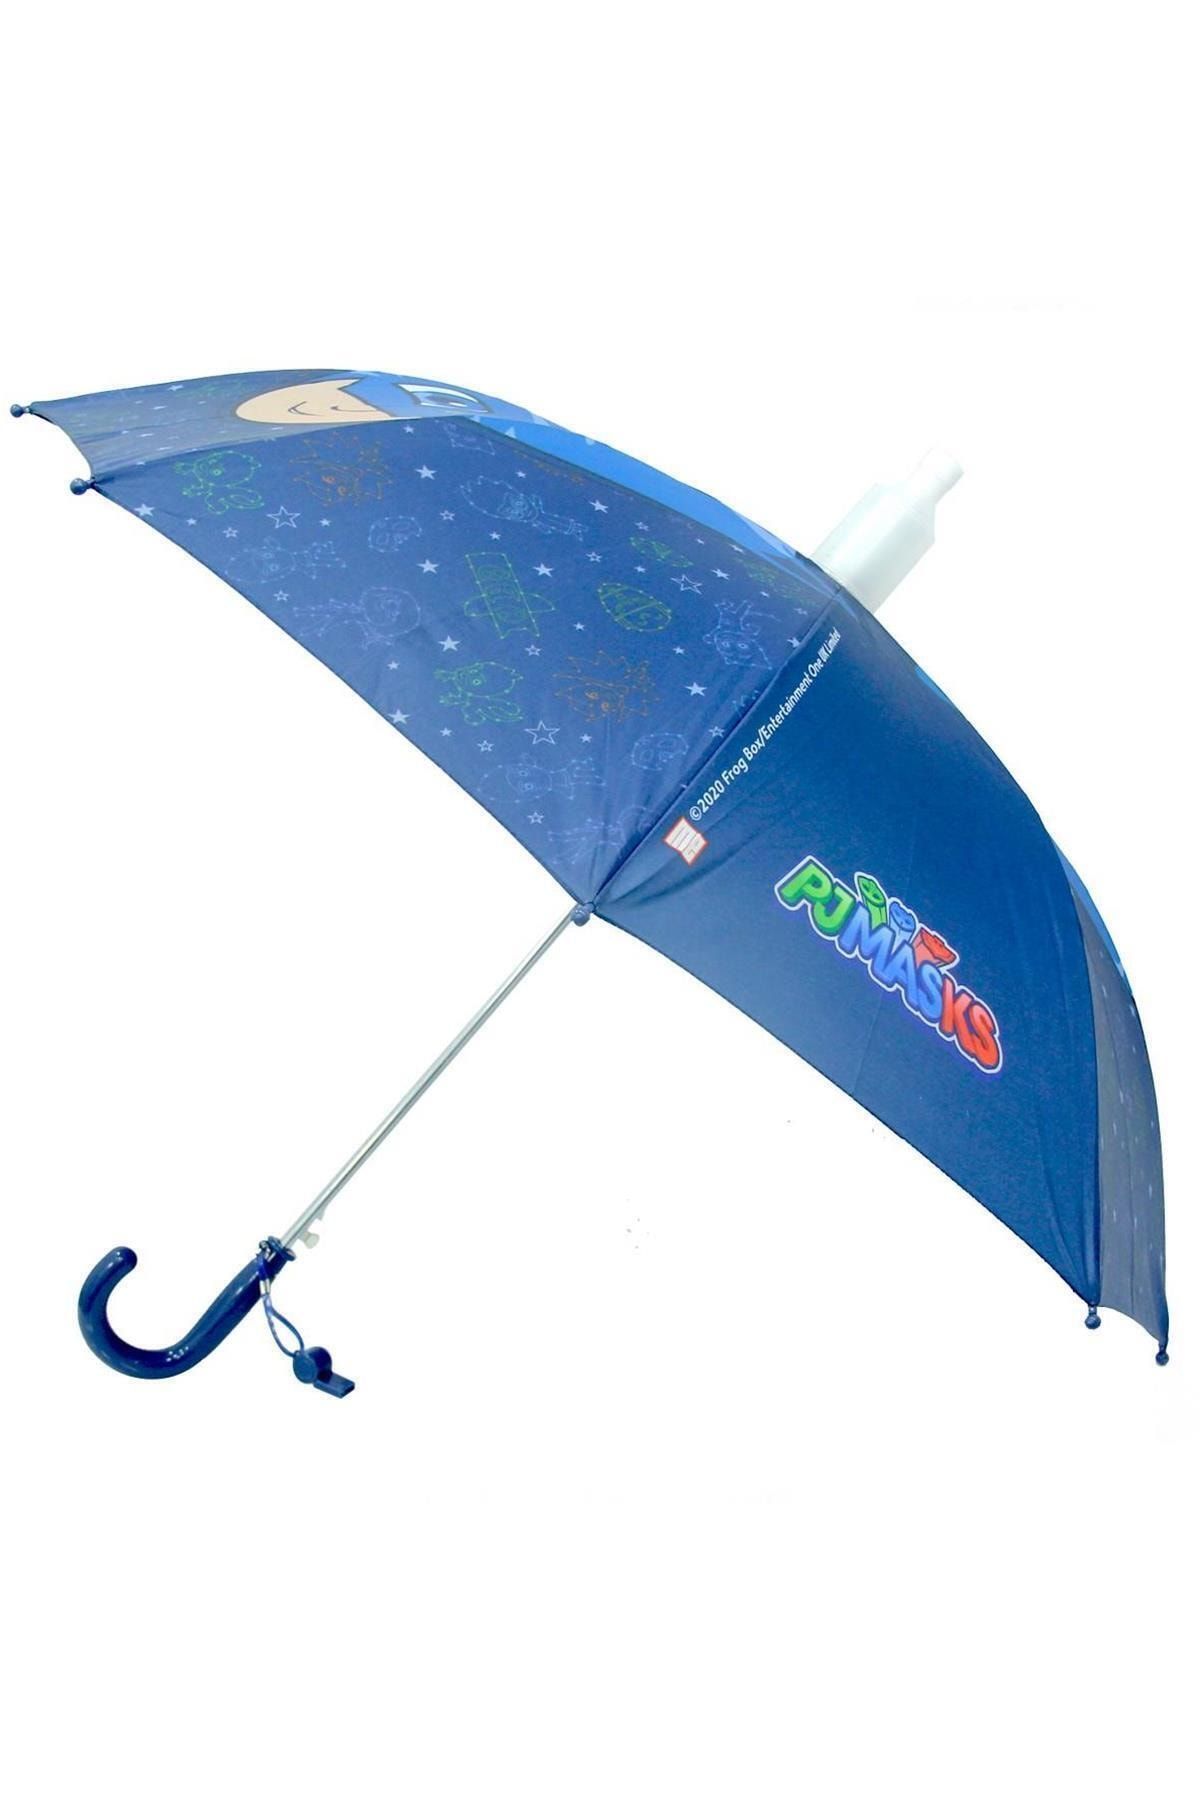 Genel Markalar Pjmasks Lisanslı Çocuk Şemsiyesi 8 Telli Mavi Şemsiye